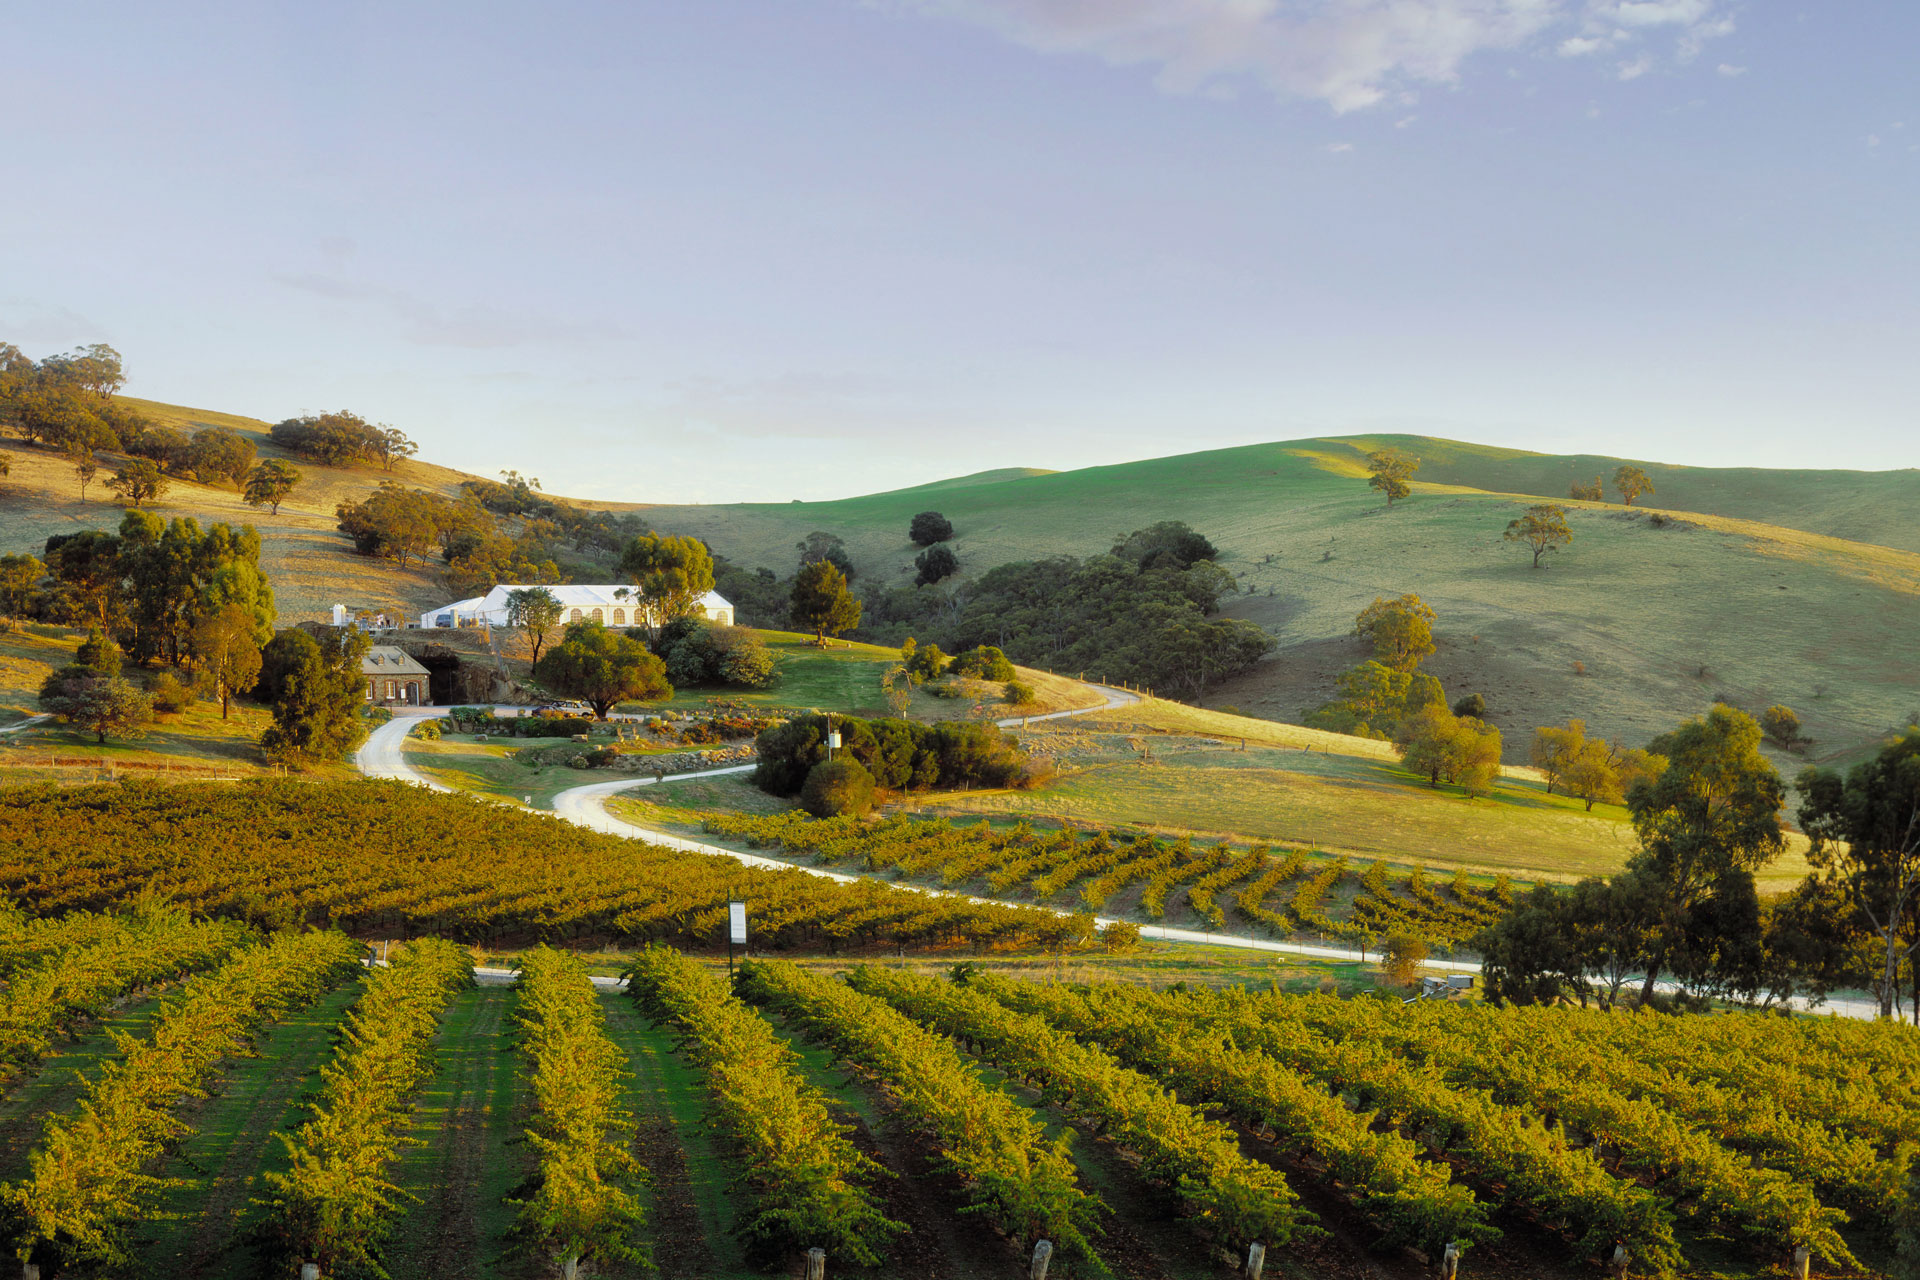 Tempat Wisata Terkenal di Adelaide - Barossa Valley Wineries